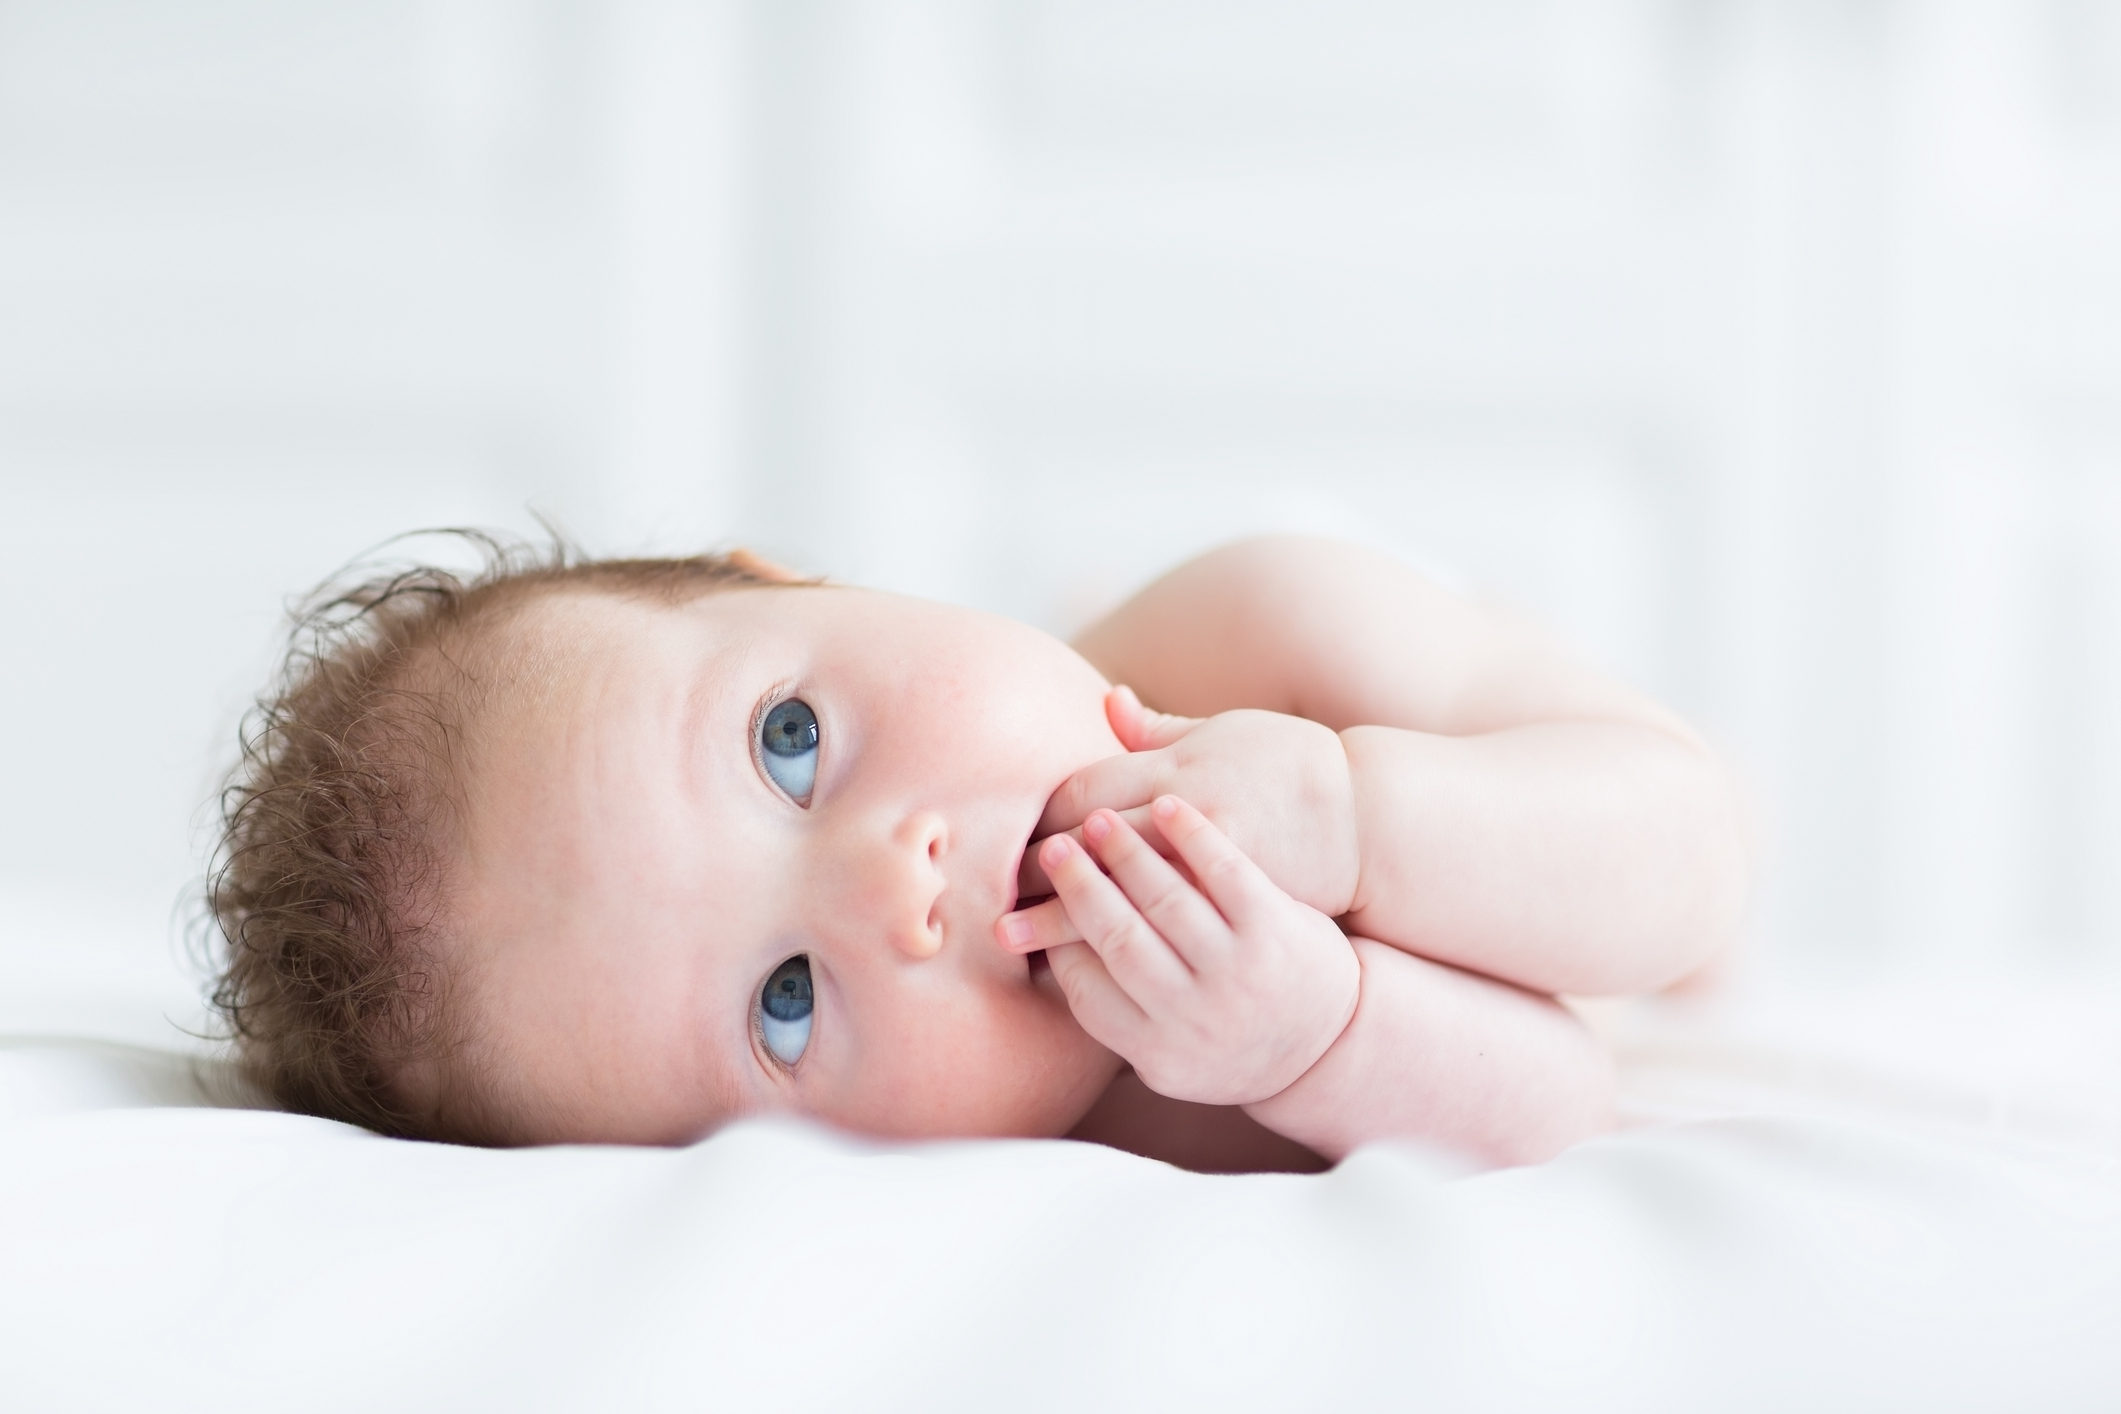 bebê de pele branca, cabelo castanho claro e olhos azuis deitado de lado, em cama com lençol branco. Ele está com as duas mãos na boca e olha para cima.